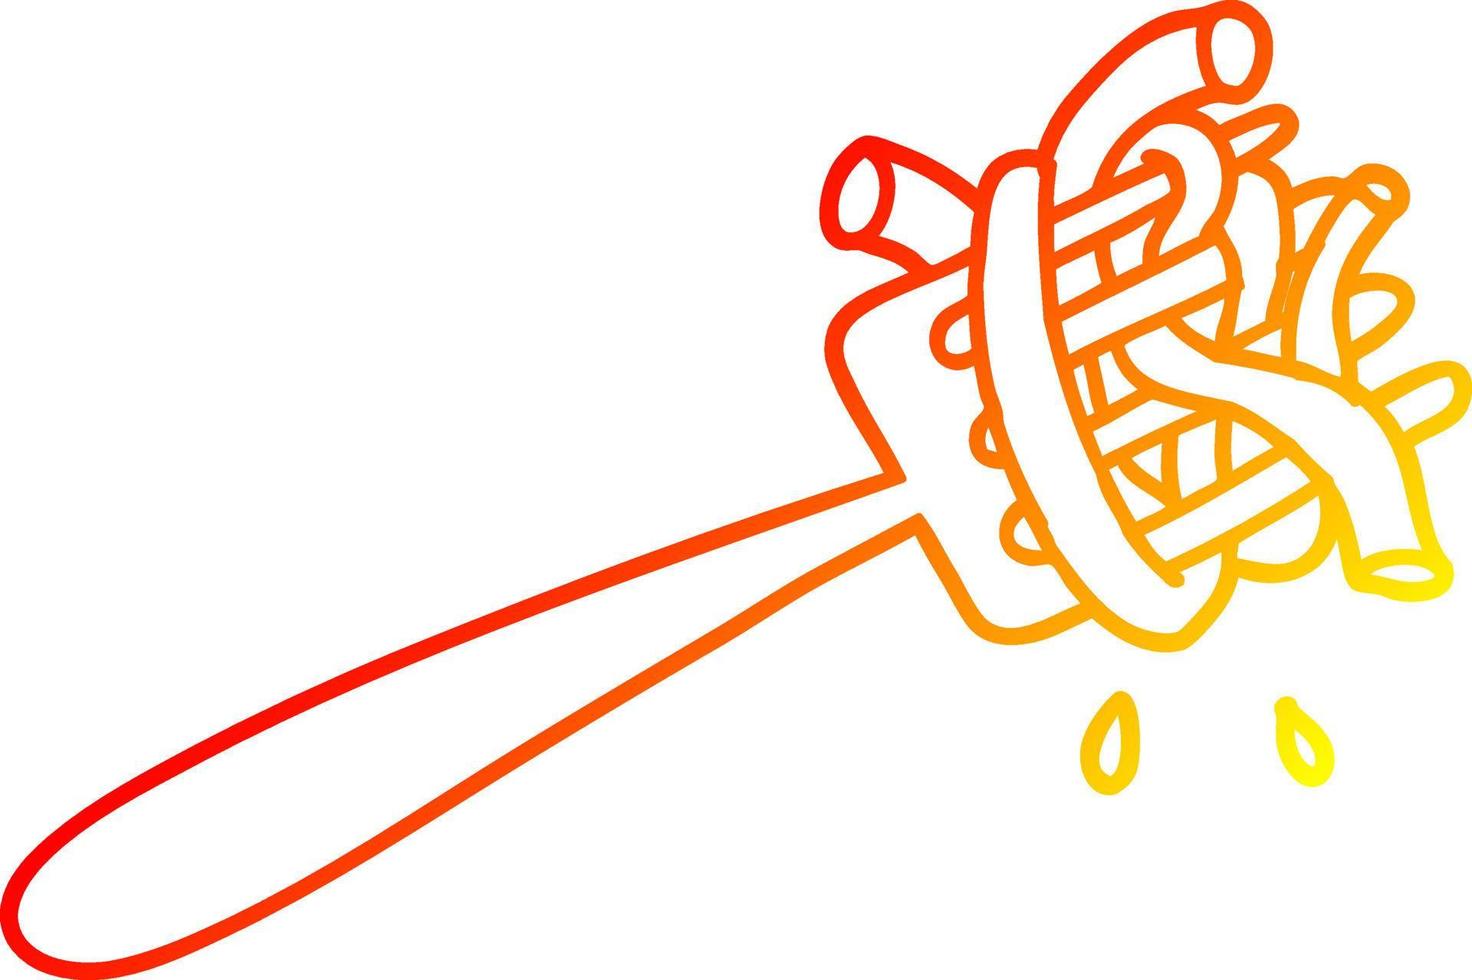 spaghetti del fumetto di disegno di linea a gradiente caldo sulla forcella vettore